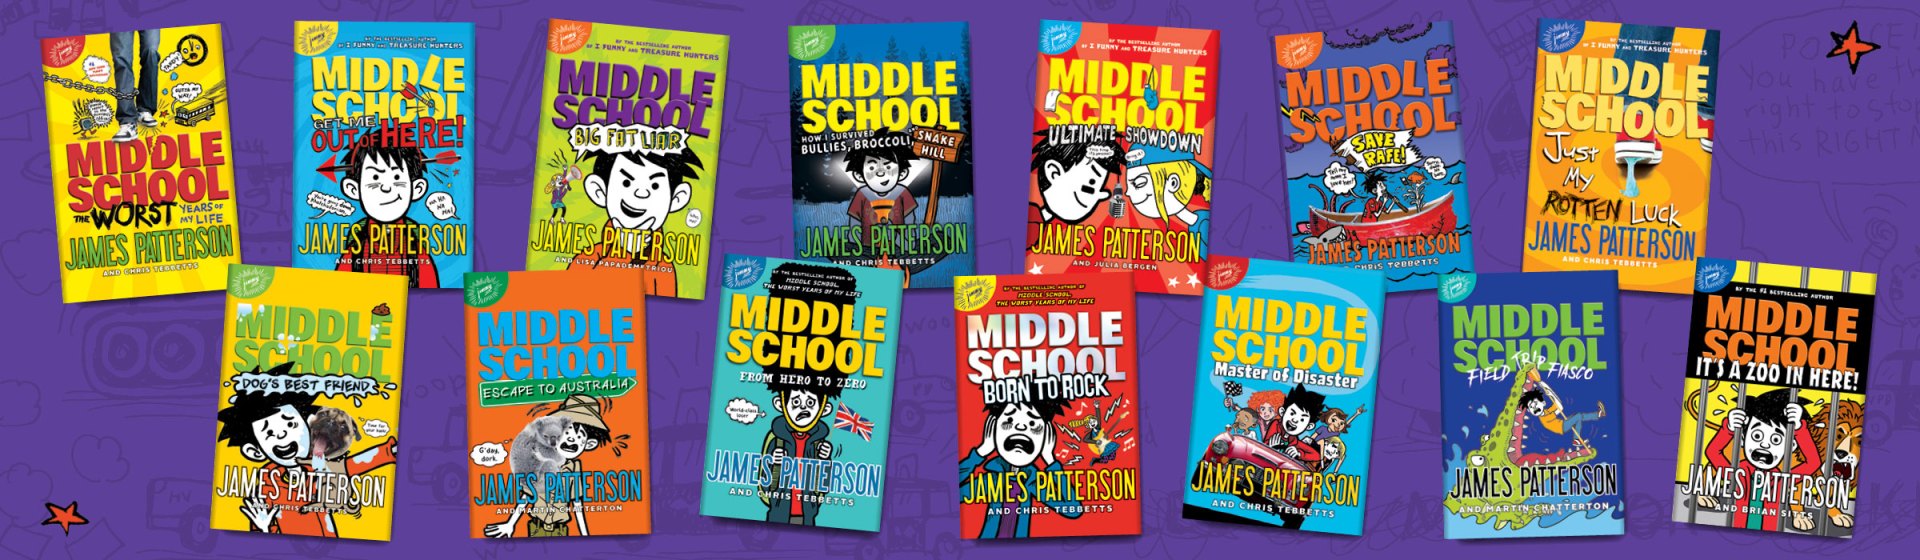 James Patterson Books Middle School Series James Patterson Kids